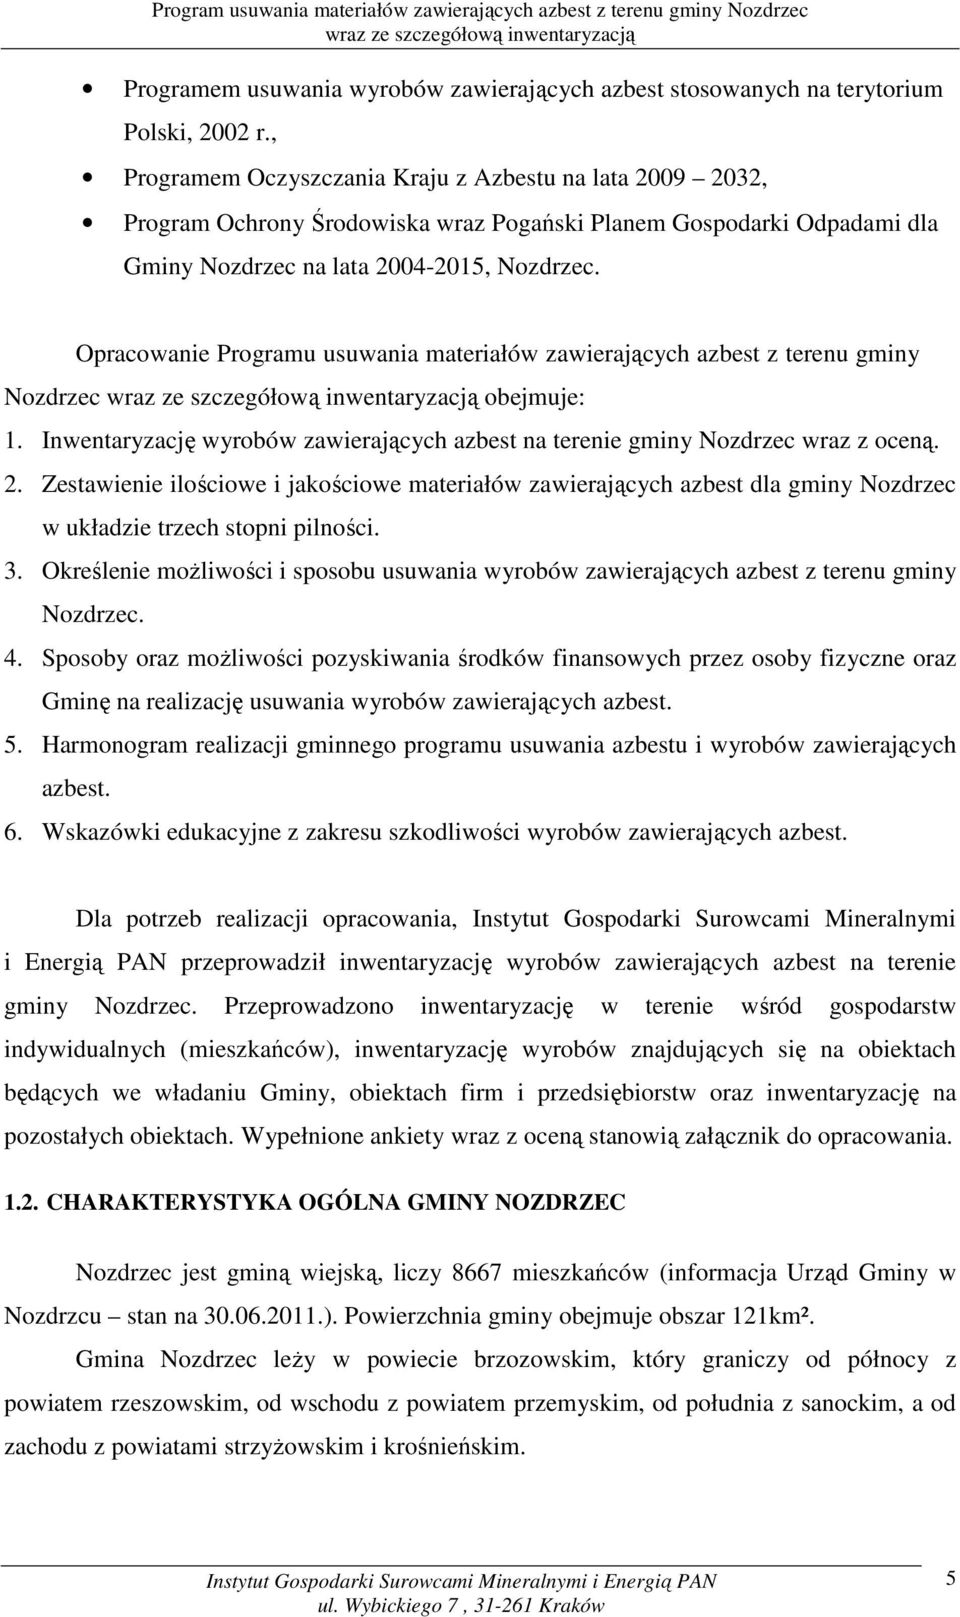 Opracowanie Programu usuwania materiałów zawierających azbest z terenu gminy Nozdrzec obejmuje: 1. Inwentaryzację wyrobów zawierających azbest na terenie gminy Nozdrzec wraz z oceną. 2.